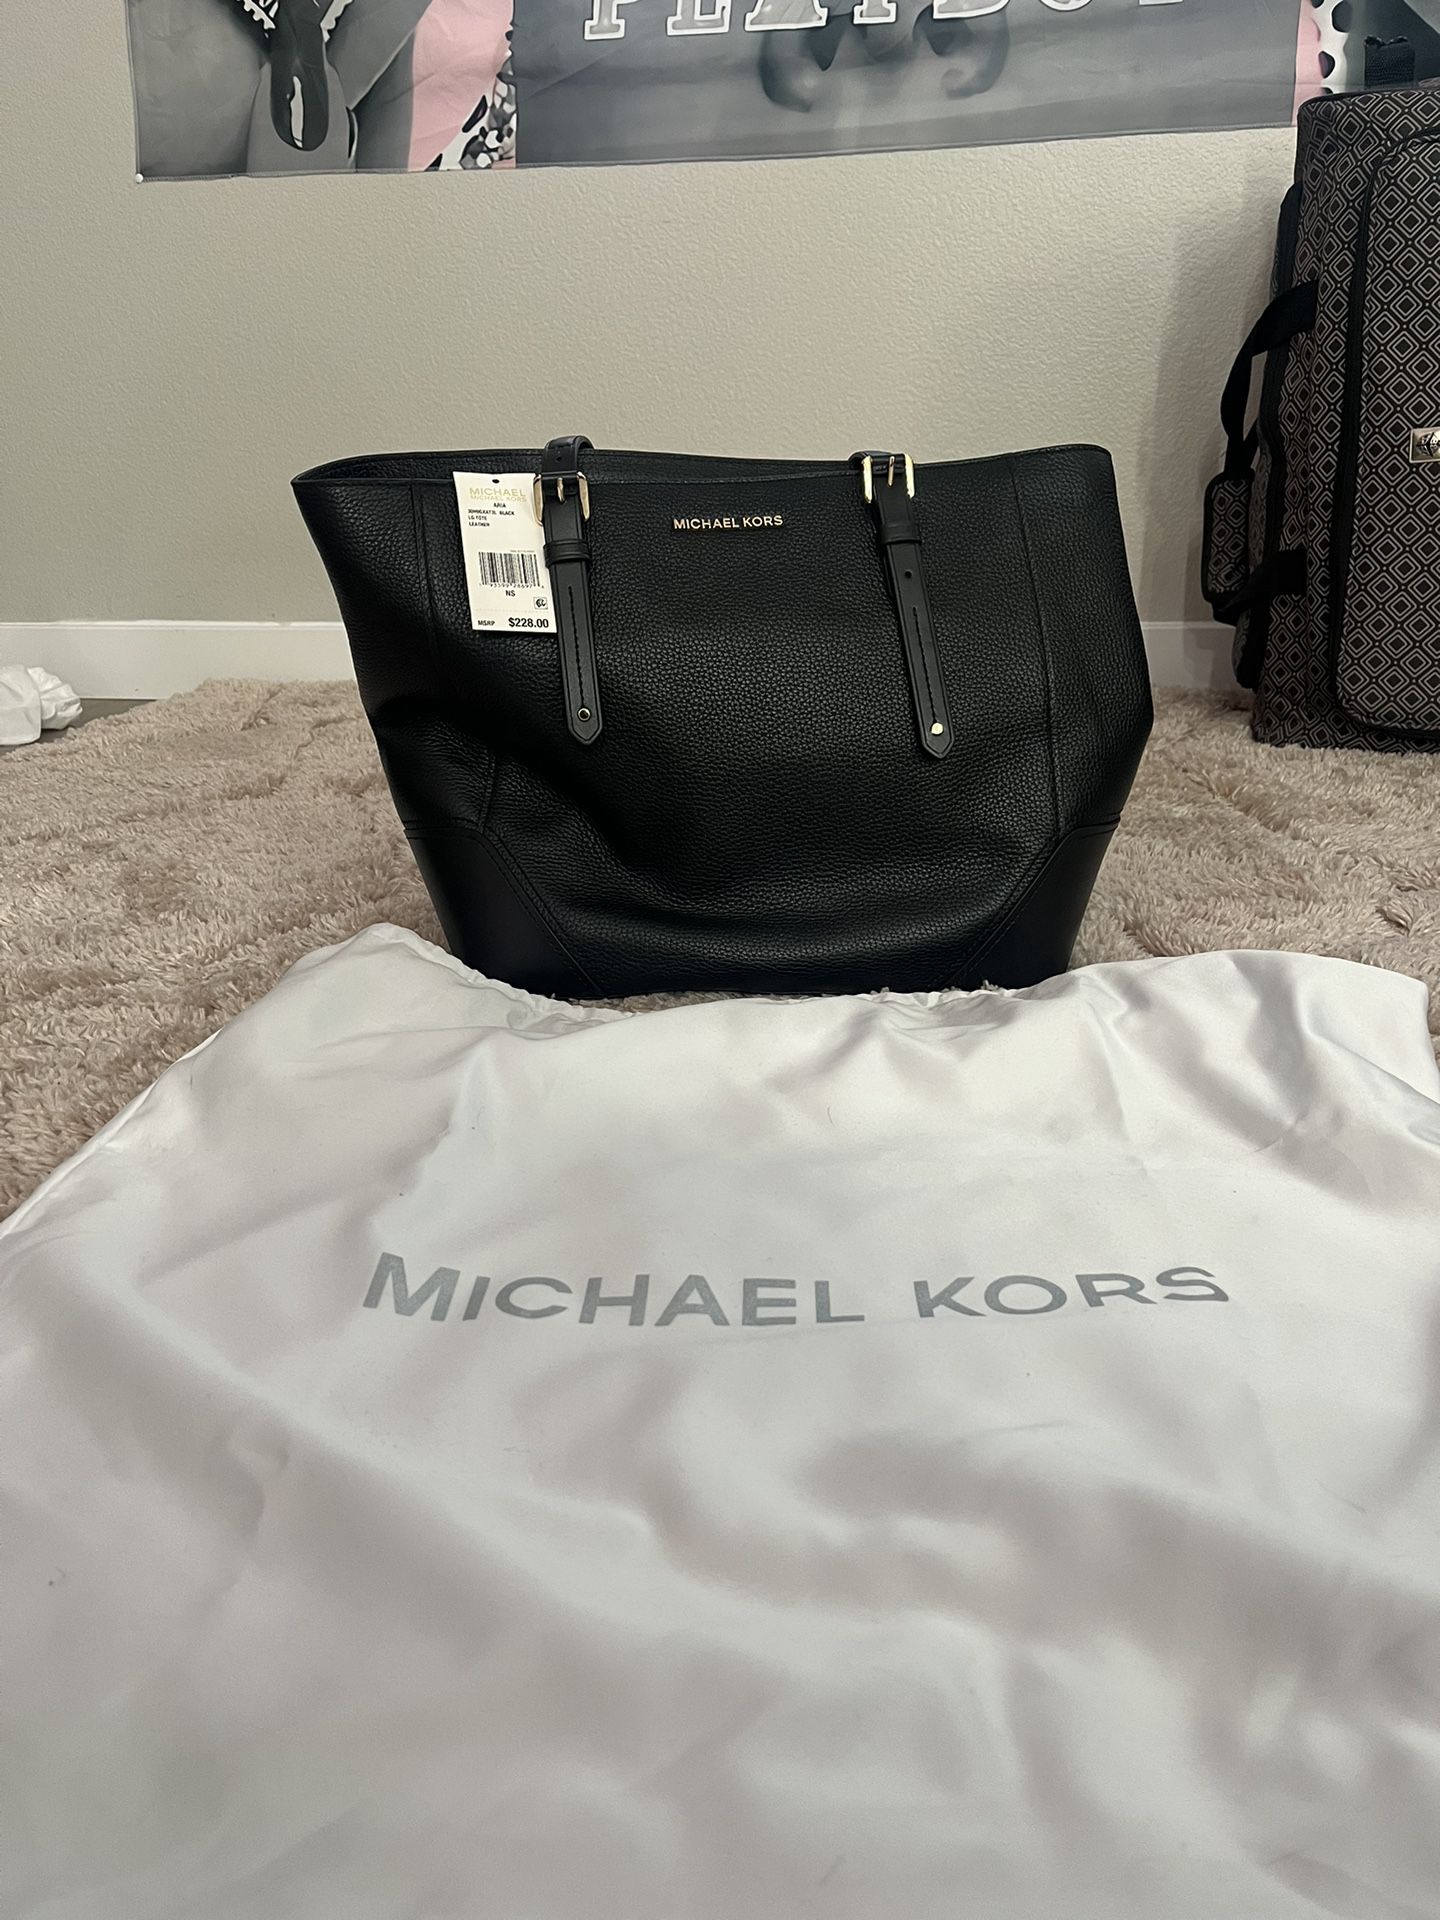 Brand New Michael Kors Bag With Dust Bag 